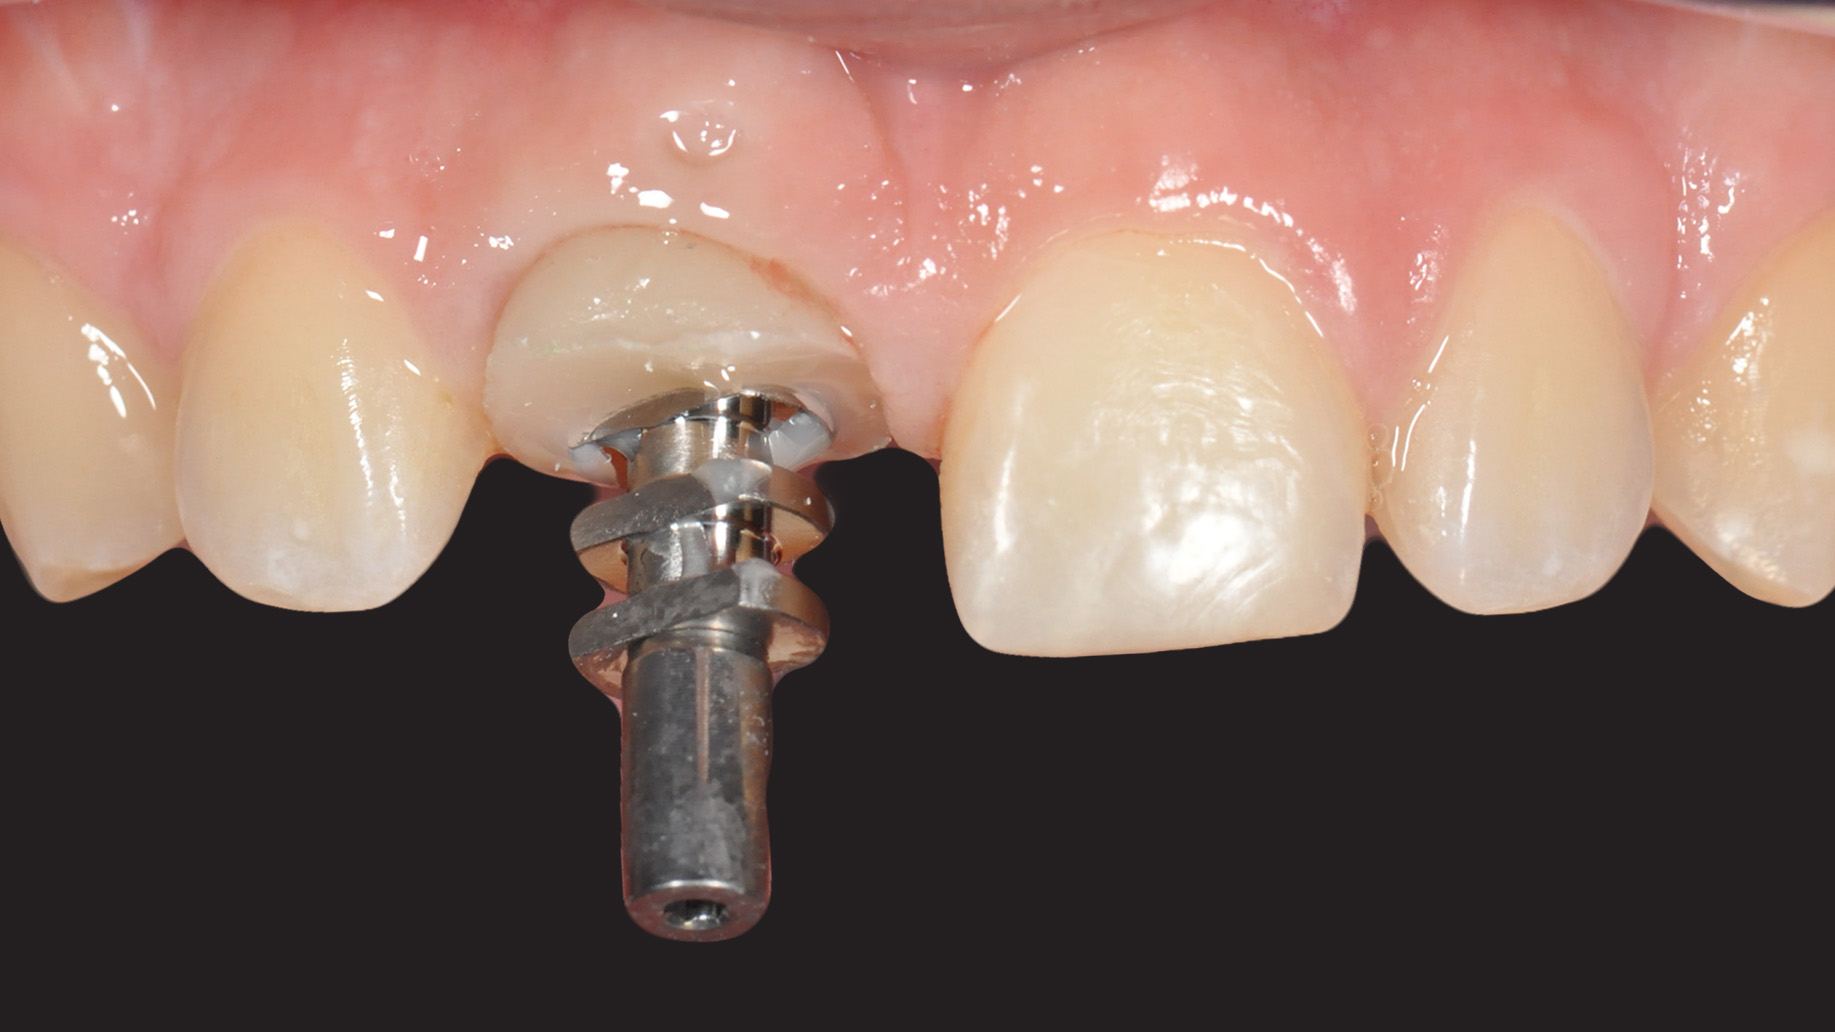 Extraction implantation et temporisation immédiate sur les dents unitaires  antérieures : 10 ans de recul clinique